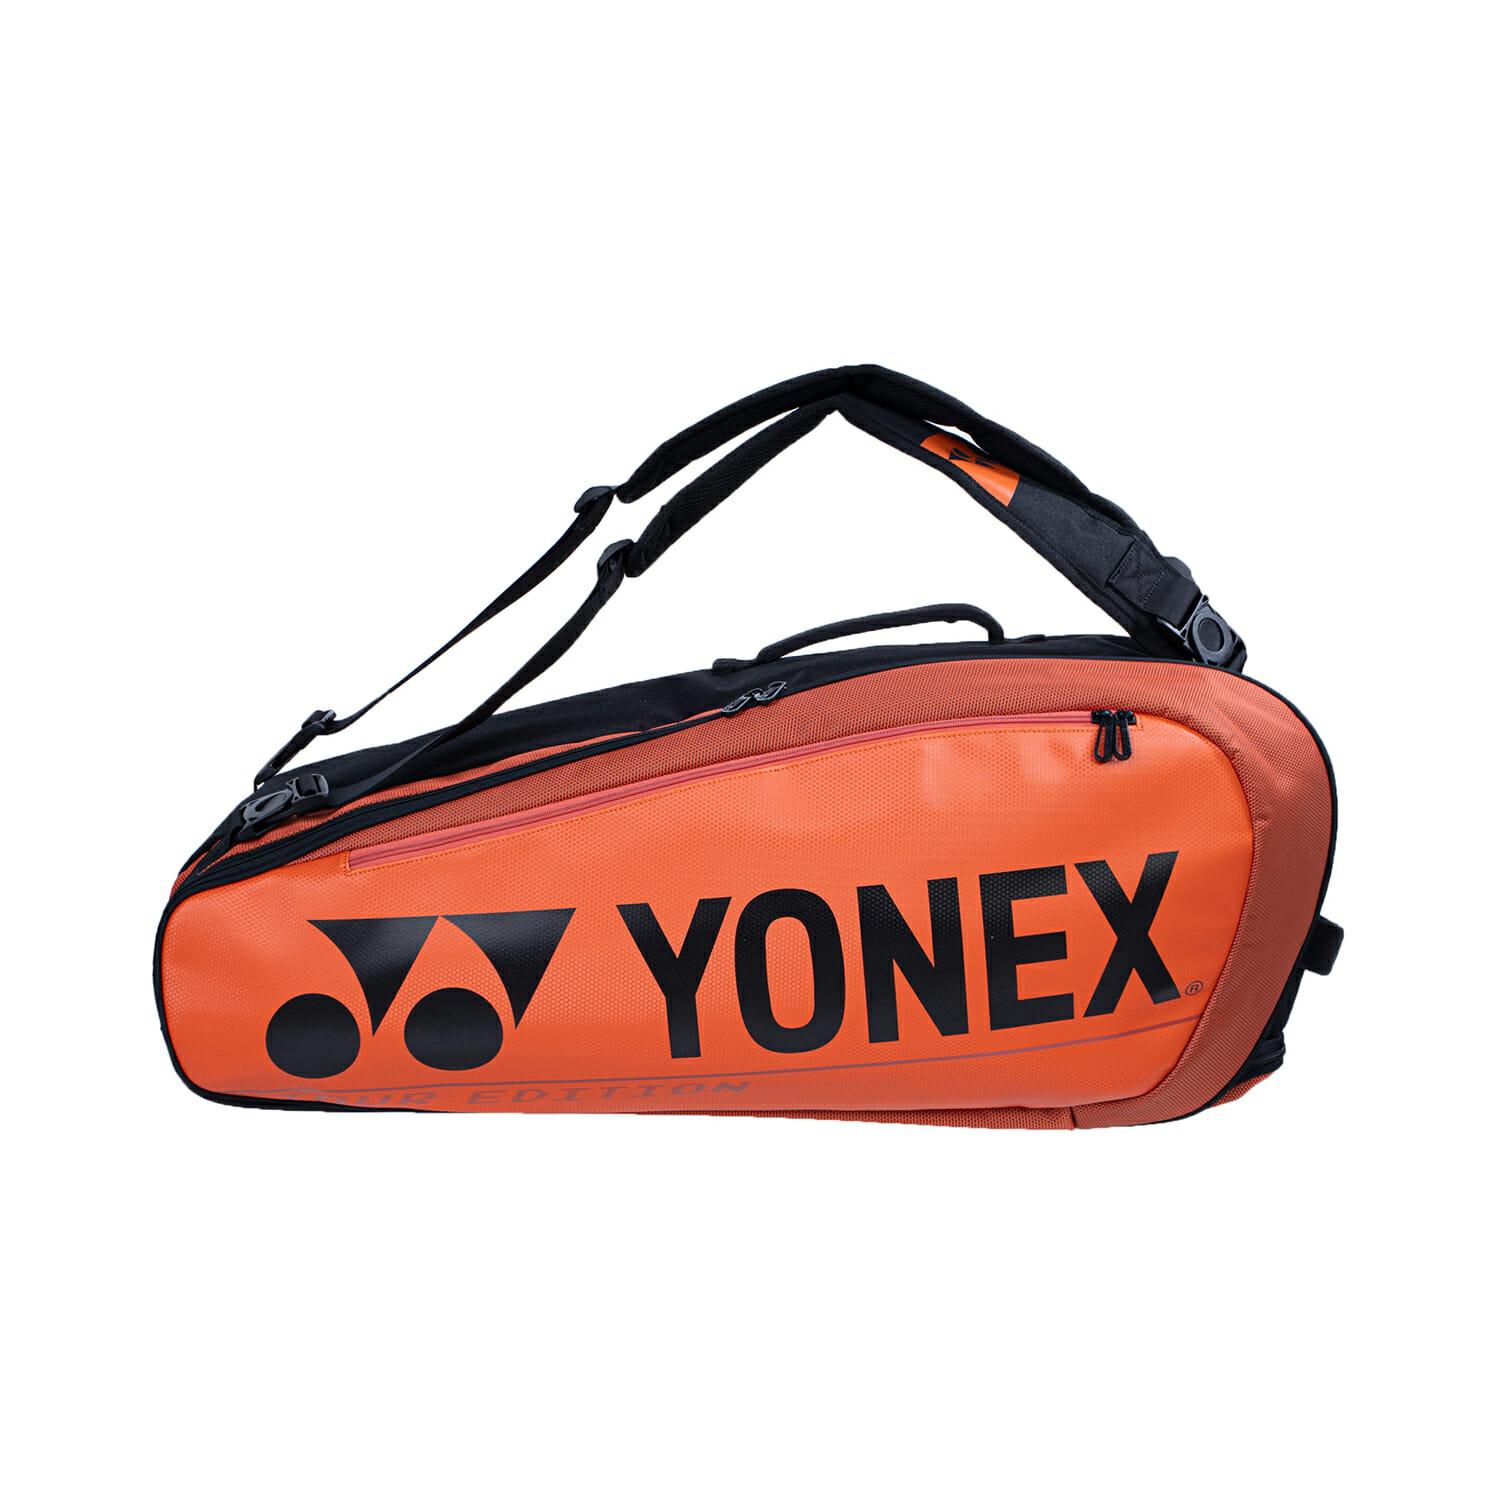 Yonex BA92026EX Copper Orange (6 Pcs) Pro Racket Bag